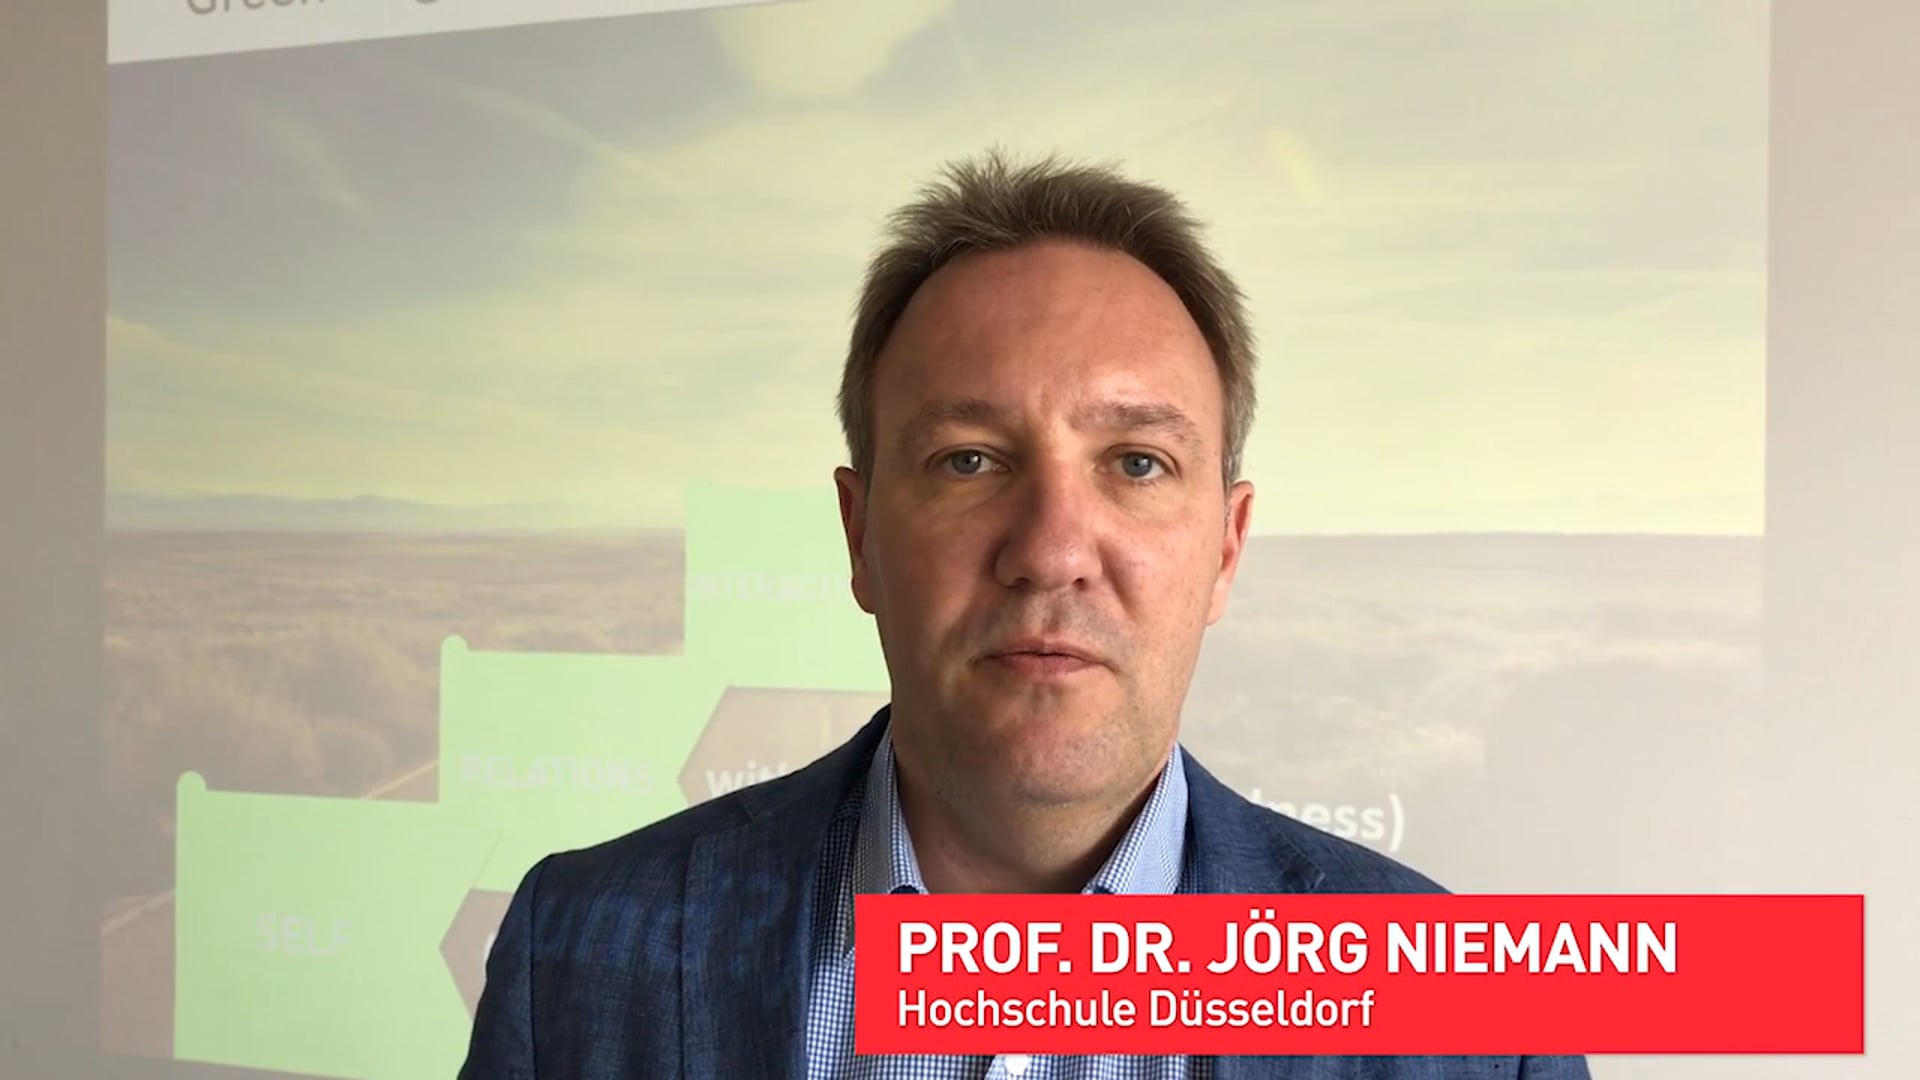 Prof. Dr. Jörg Niemann, HS Düsseldorf